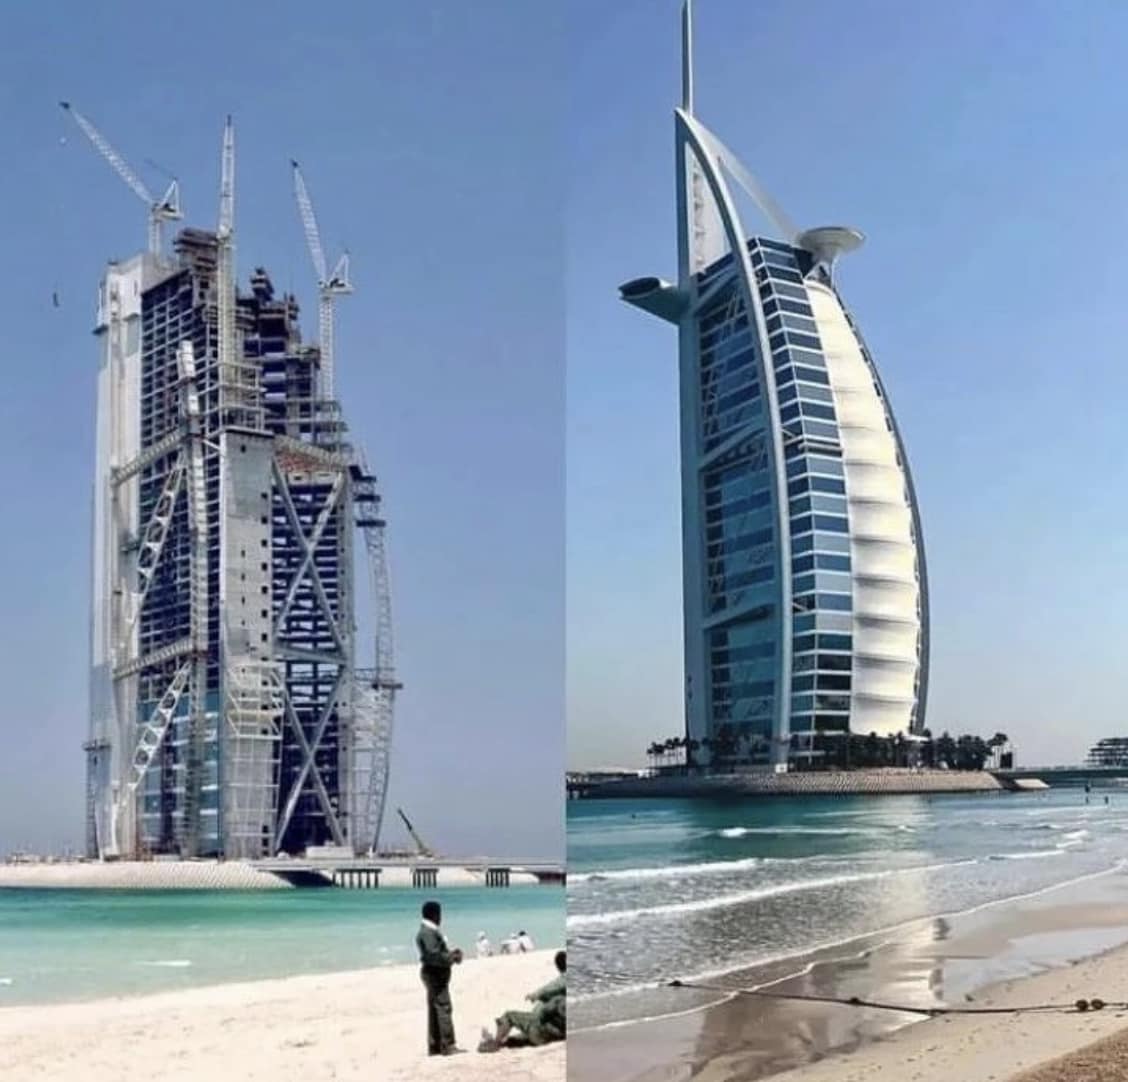 29 anni fa iniziava la costruzione del Burj al-Arab, la Torre degli Arabi.

Prendeva piede un progetto, ispirato da una mente visionaria.

Nasceva un’immagine.

Nasceva l’immagine di un Emirato, sepolto dalle sabbie del deserto.

Da miraggio a realtà, dalla sabbia a Dubai.

#mydubai